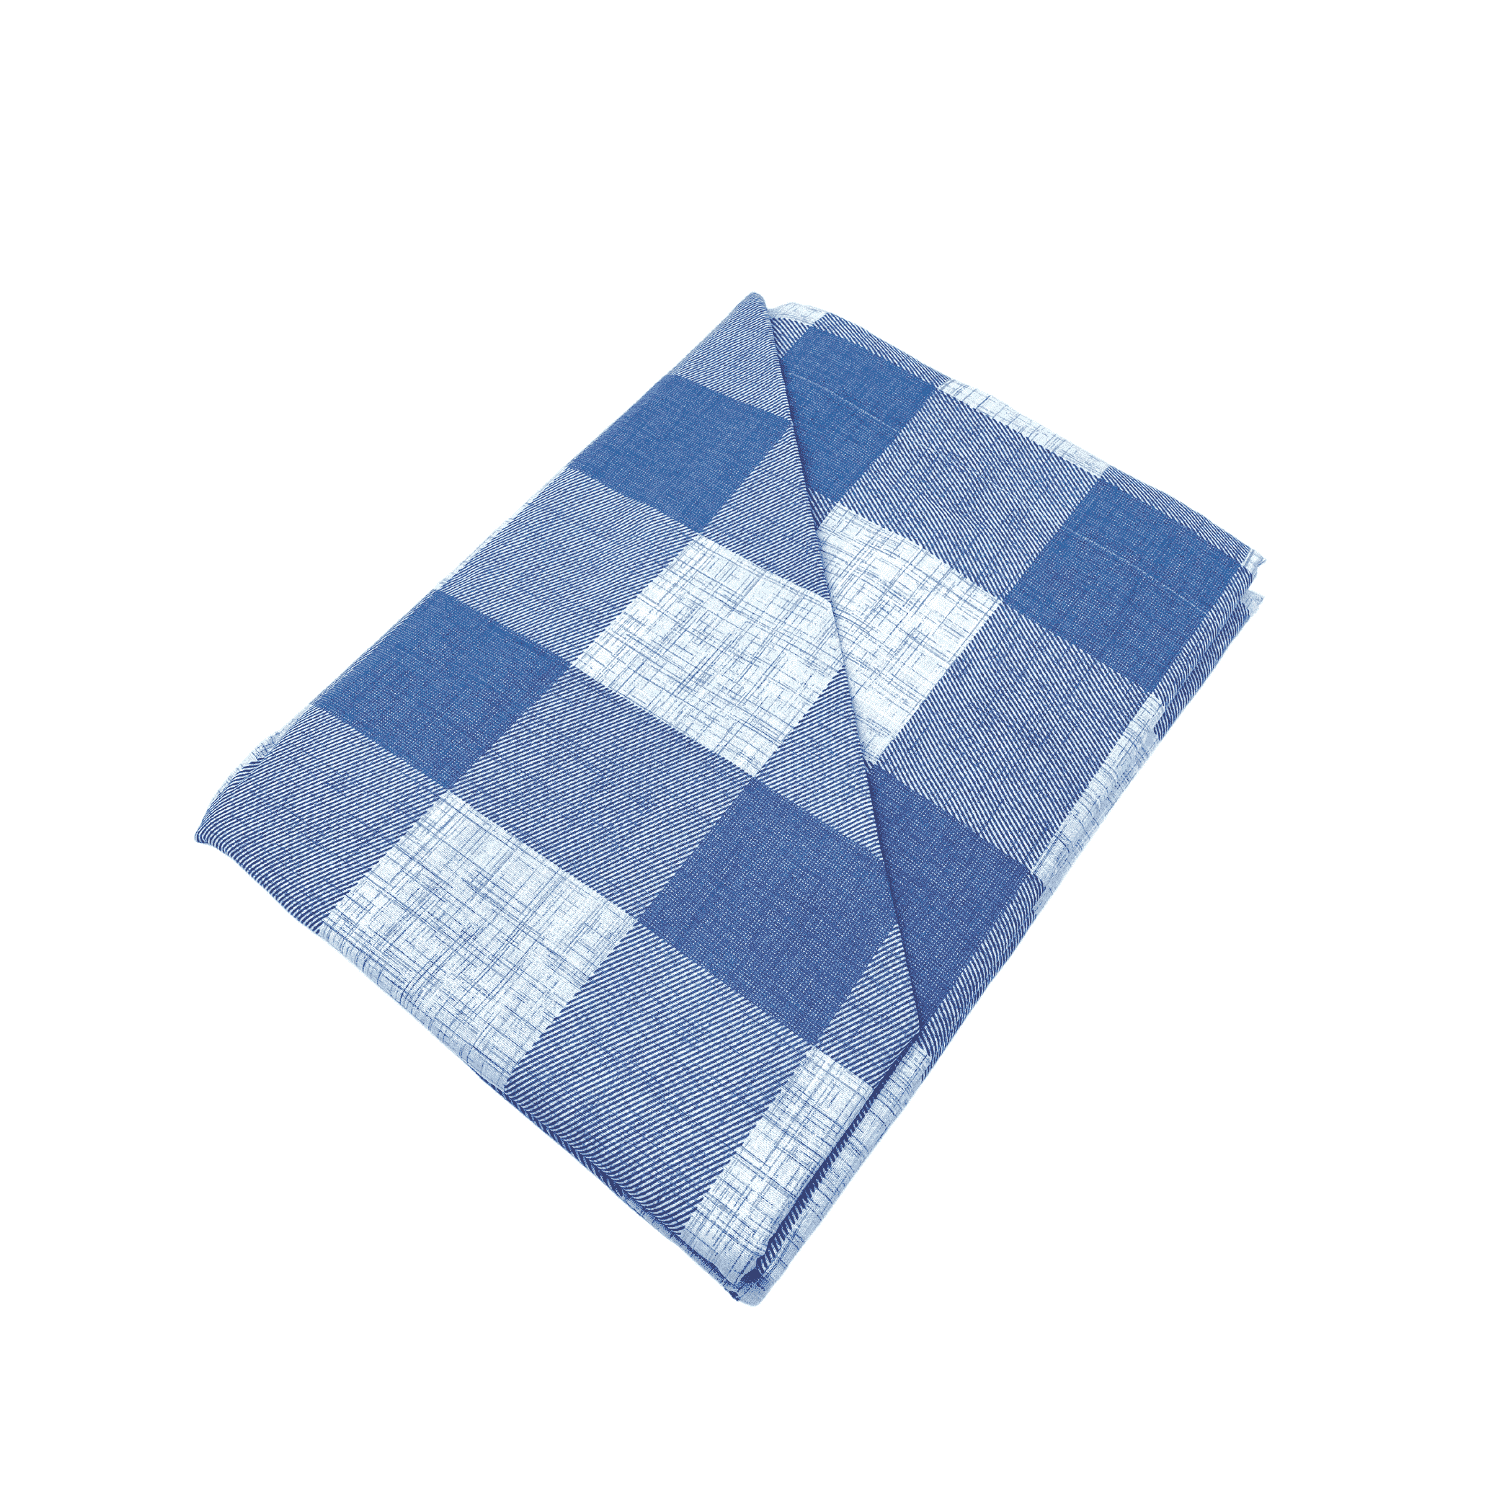 completo-lenzuola-intersezione-azzurro-penelope-quadretto-perla-antracite-bianco-geometrico-classico-fold